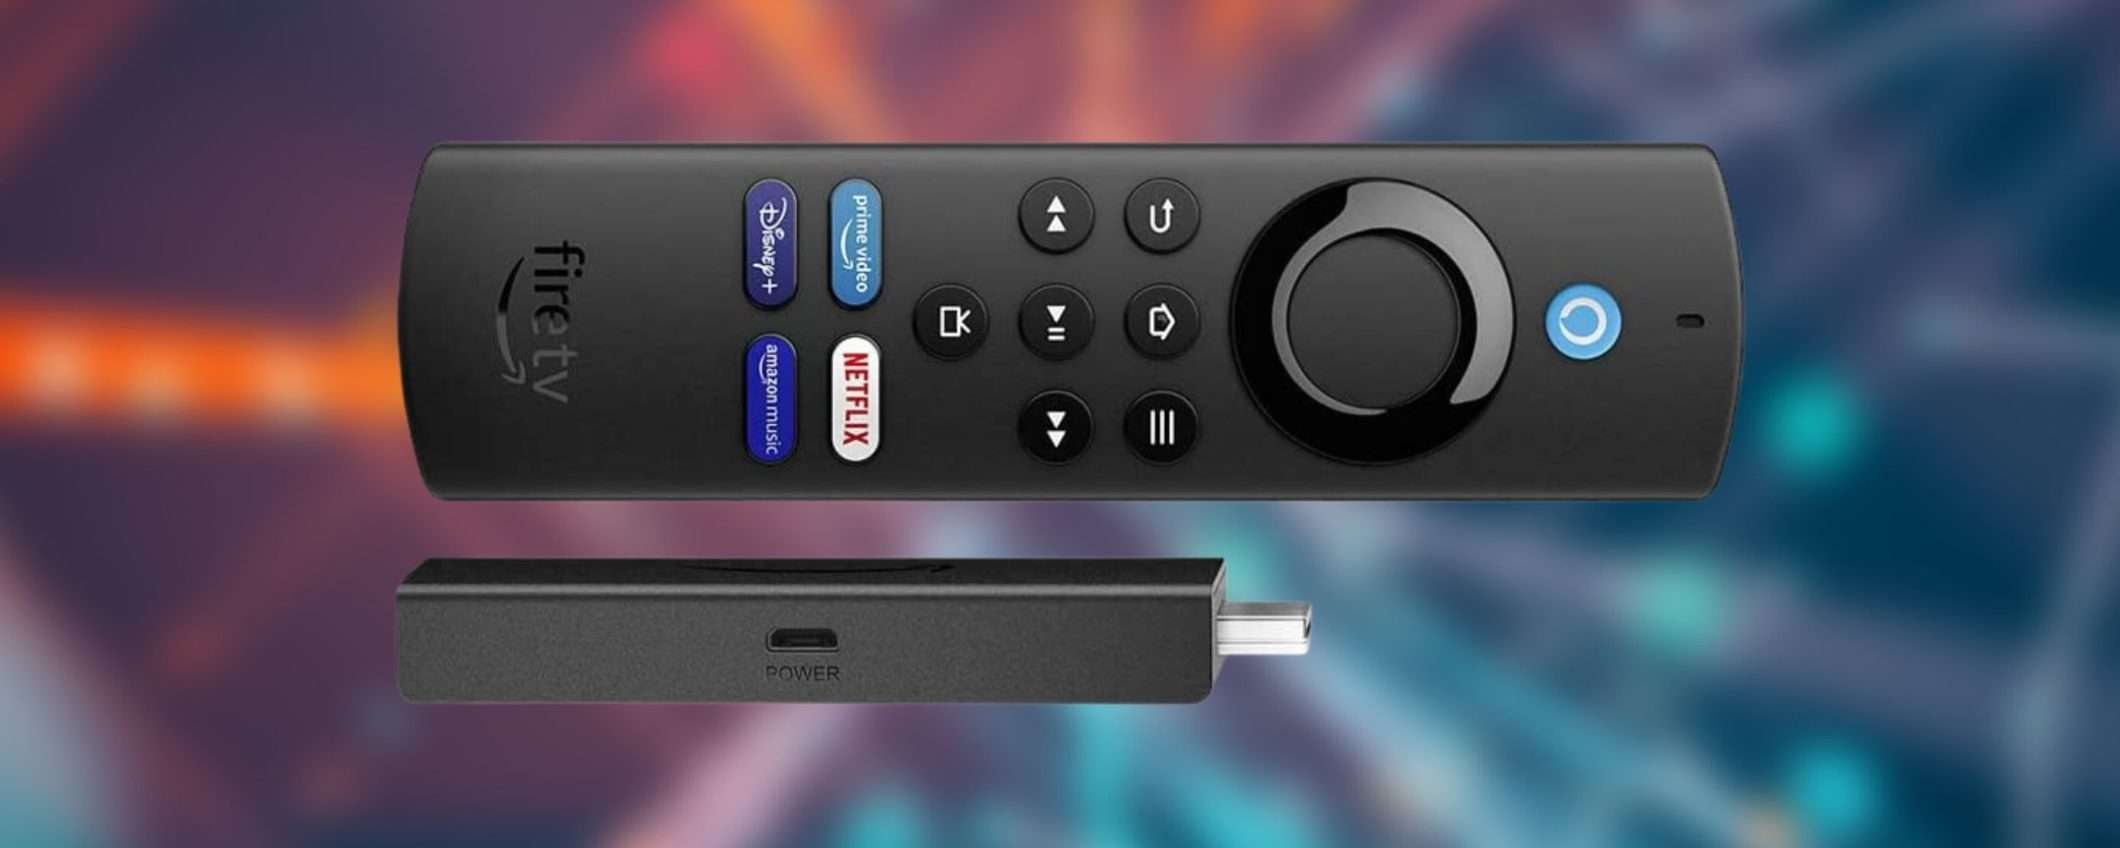 Promo BOMBA Amazon: Fire TV Stick Lite a 21€, smart TV top a prezzo regalo